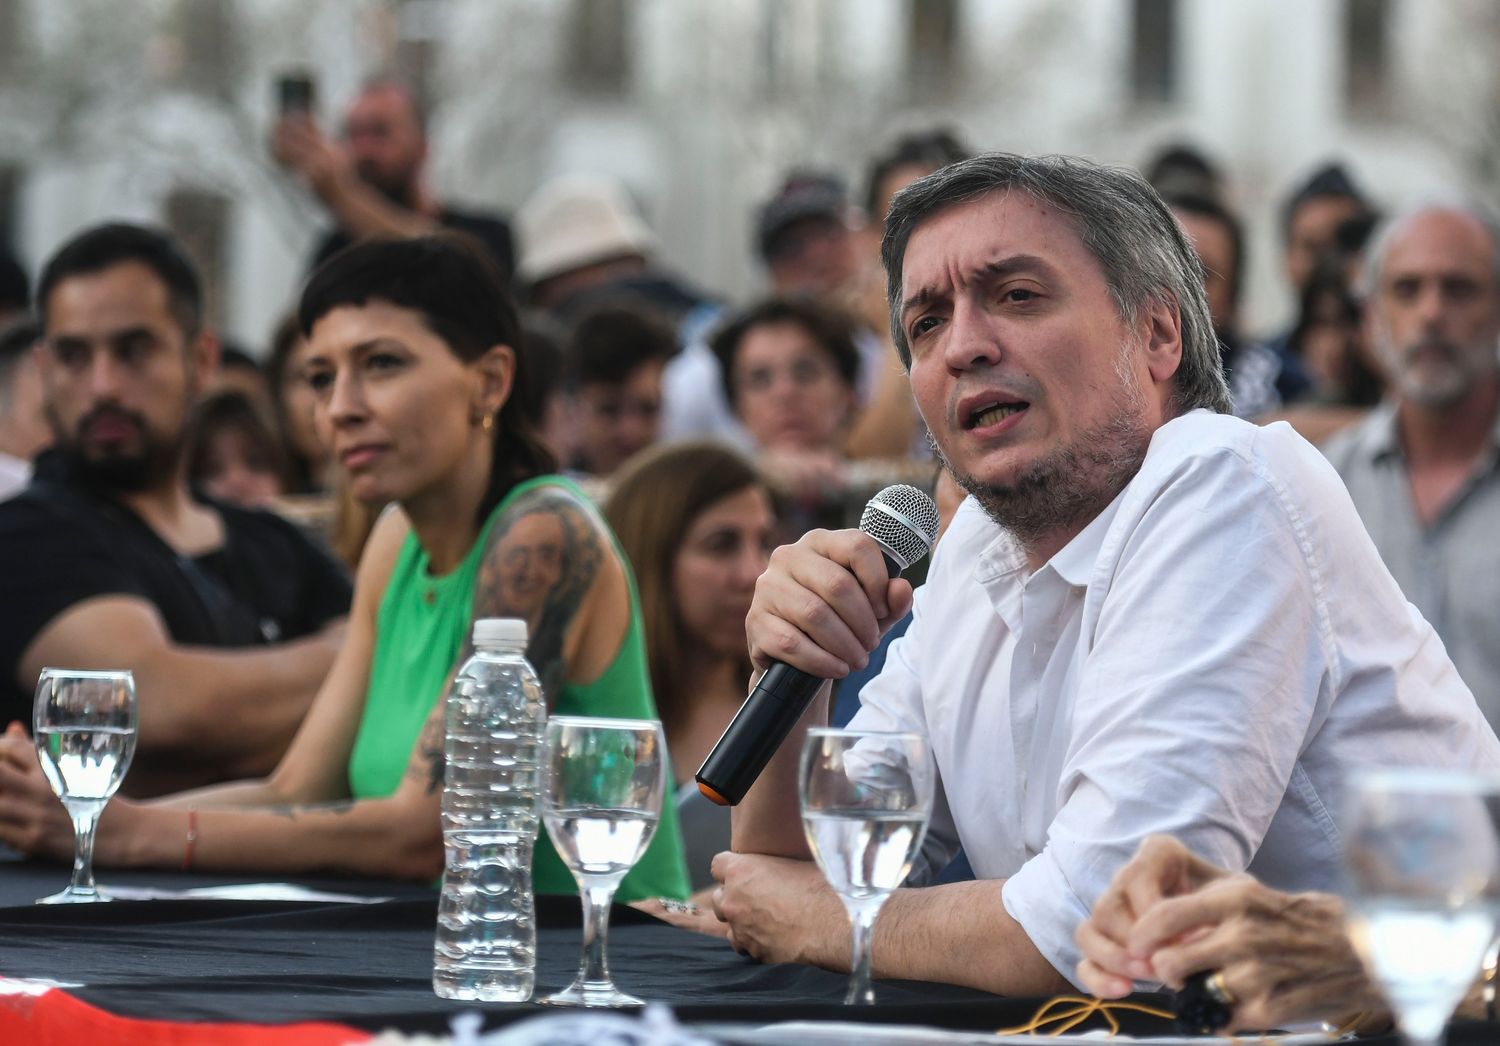 Máximo Kirchner cuestionó a Macri por "no haber hecho nada" con la plata que recibió del FMI: "La derecha fracasó" 